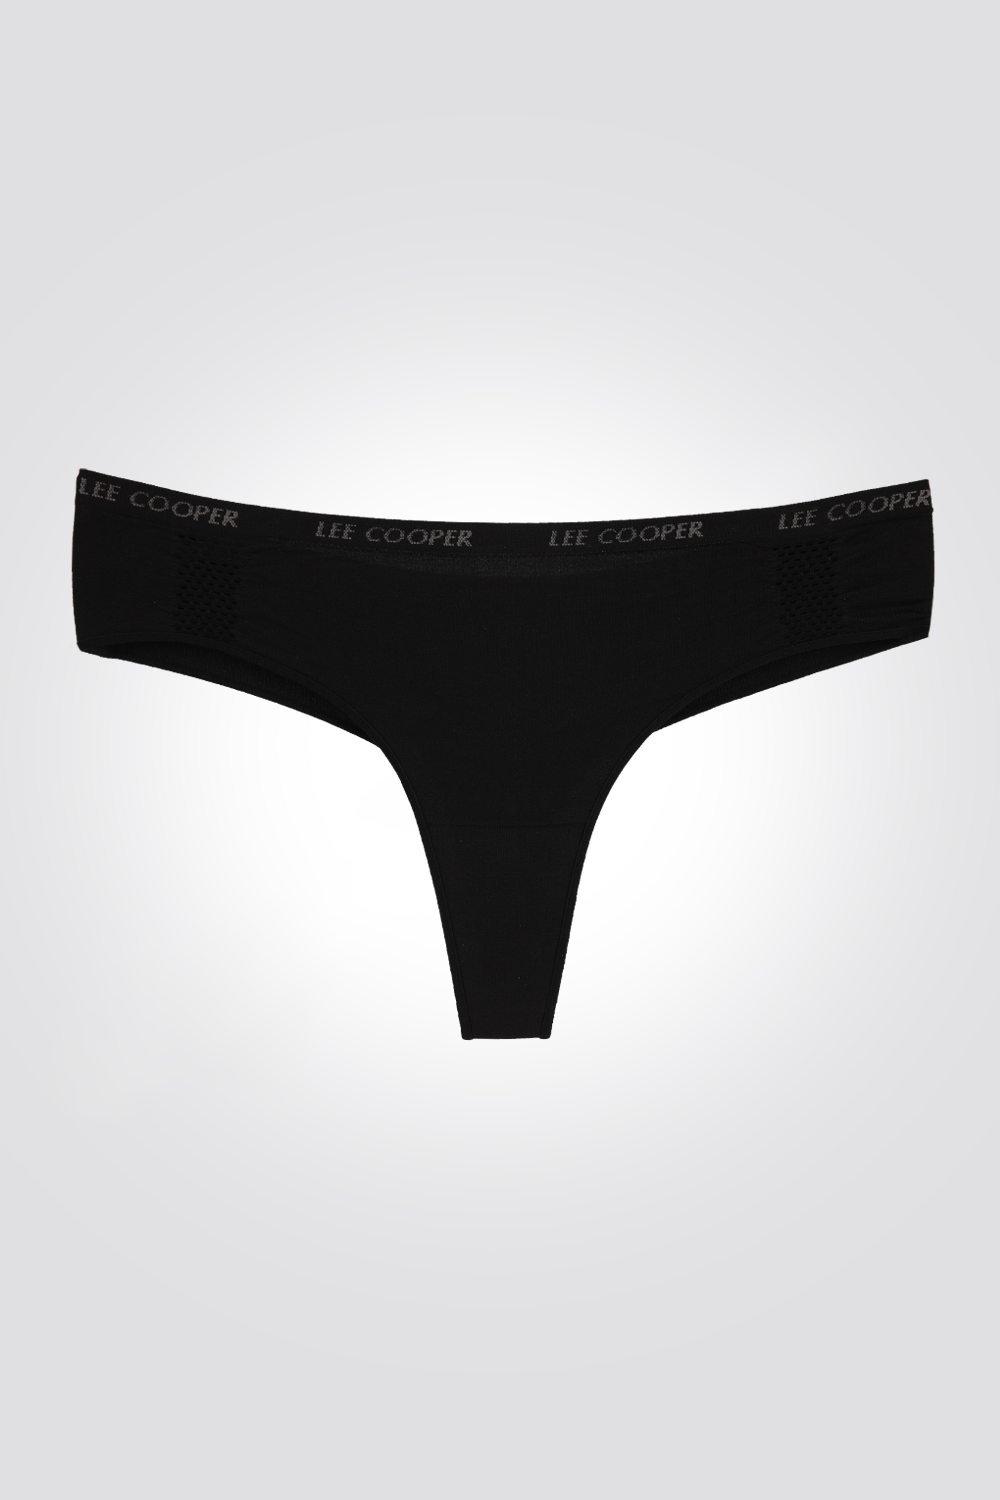 LEE COOPER - פיל קול תחתוני חוטיני היפסטרינג בצבע שחור - MASHBIR//365